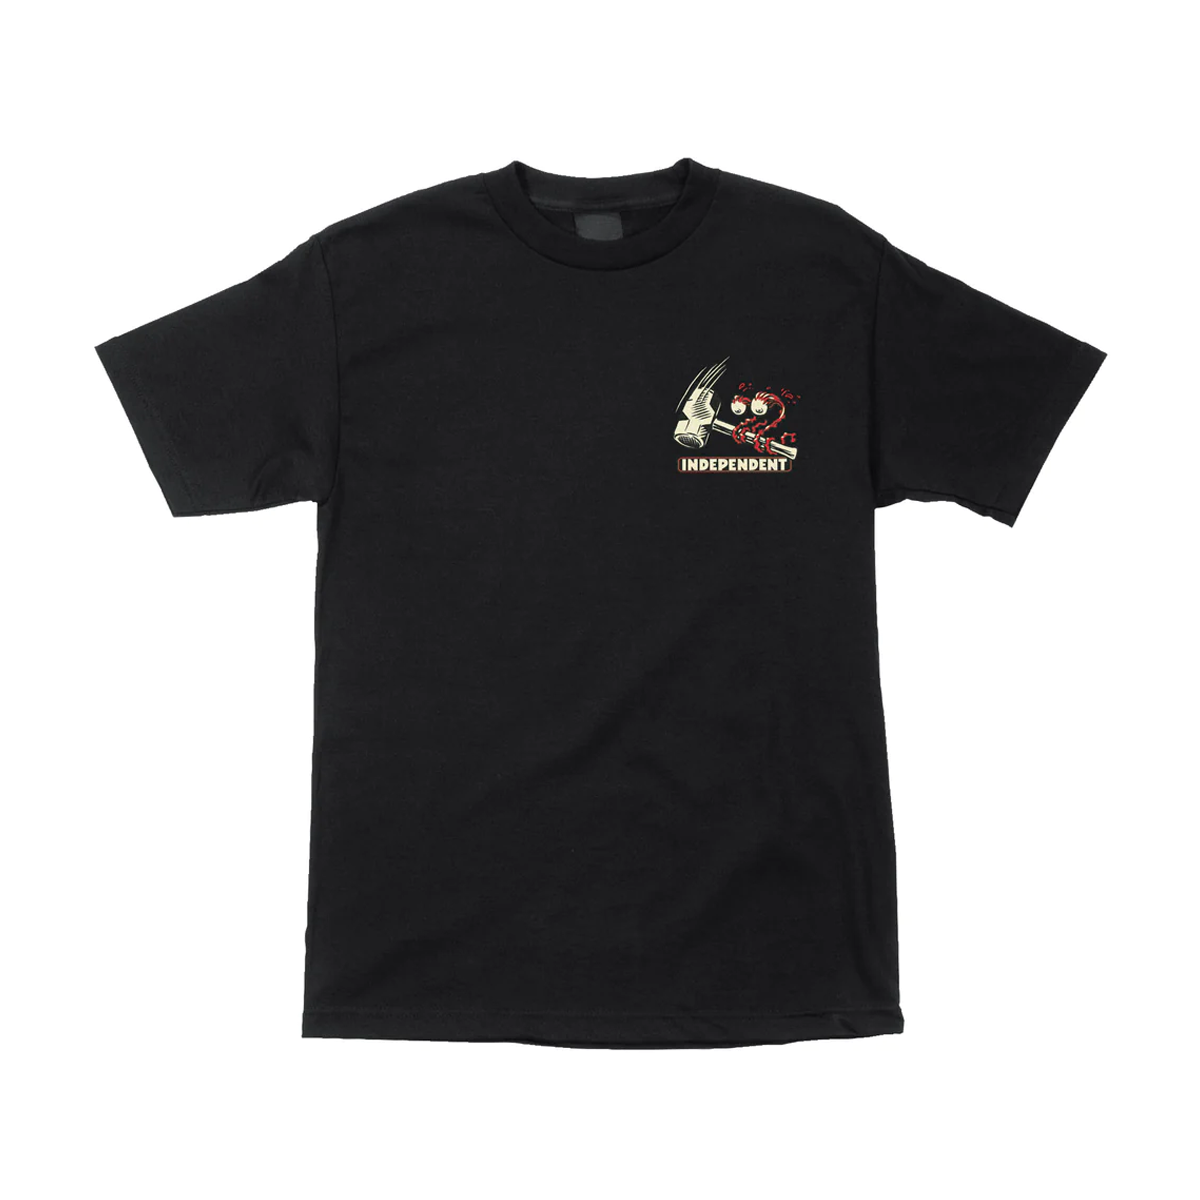 Independent TTG Smash T-Shirt - Black - Directive Boardshop